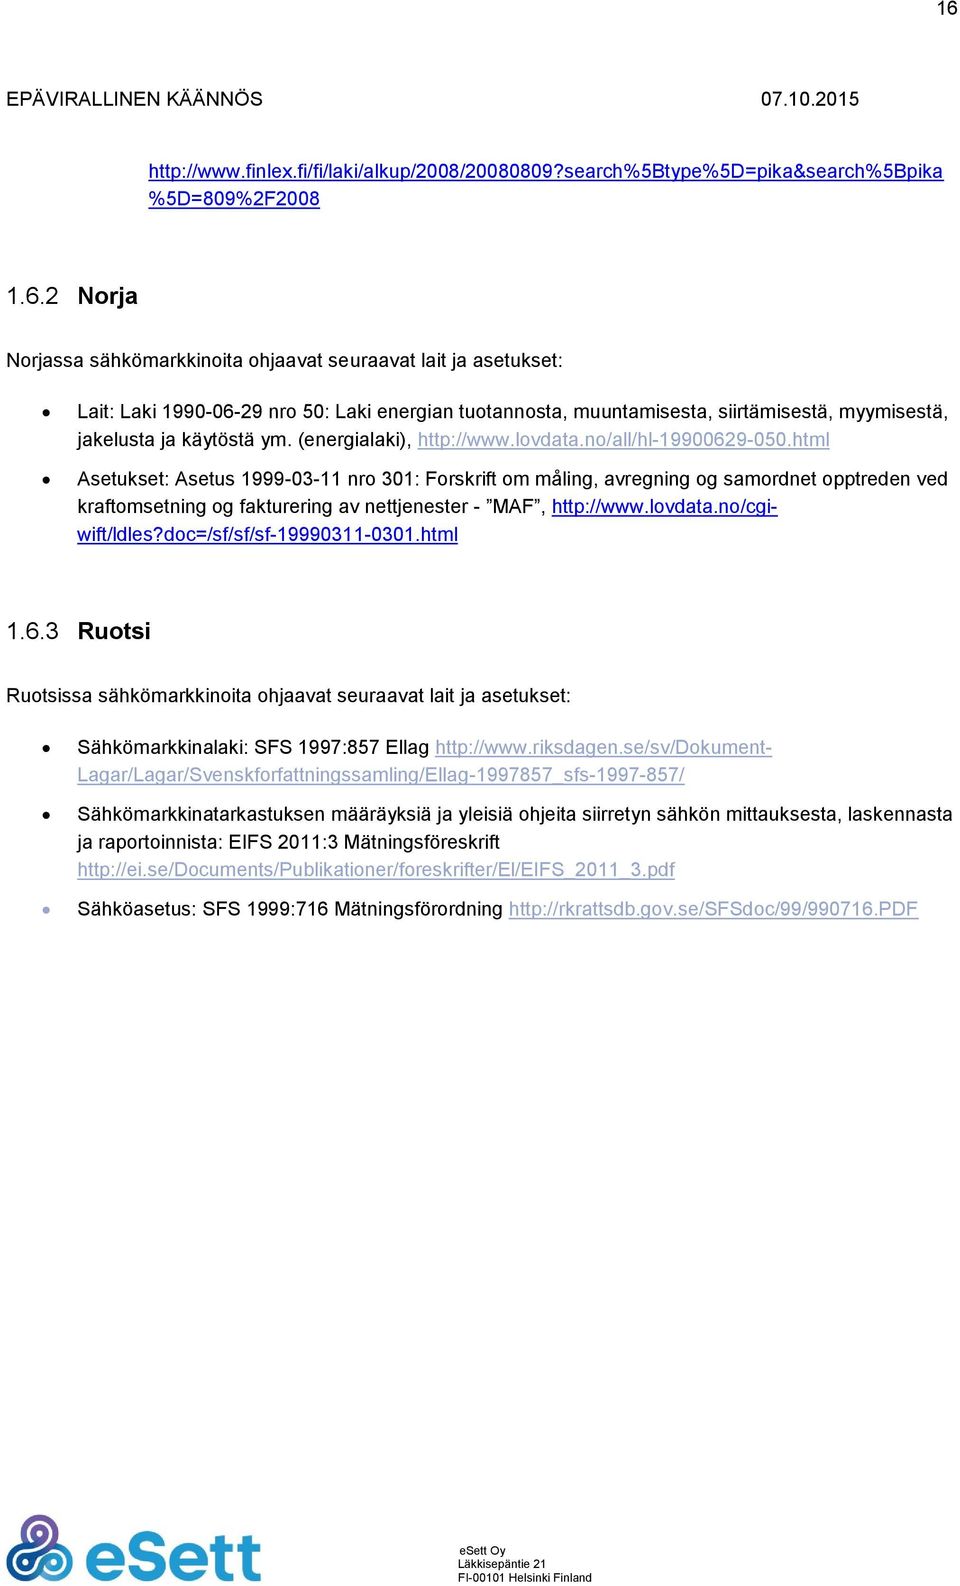 html Asetukset: Asetus 1999-03-11 nro 301: Forskrift om måling, avregning og samordnet opptreden ved kraftomsetning og fakturering av nettjenester - MAF, http://www.lovdata.no/cgiwift/ldles?